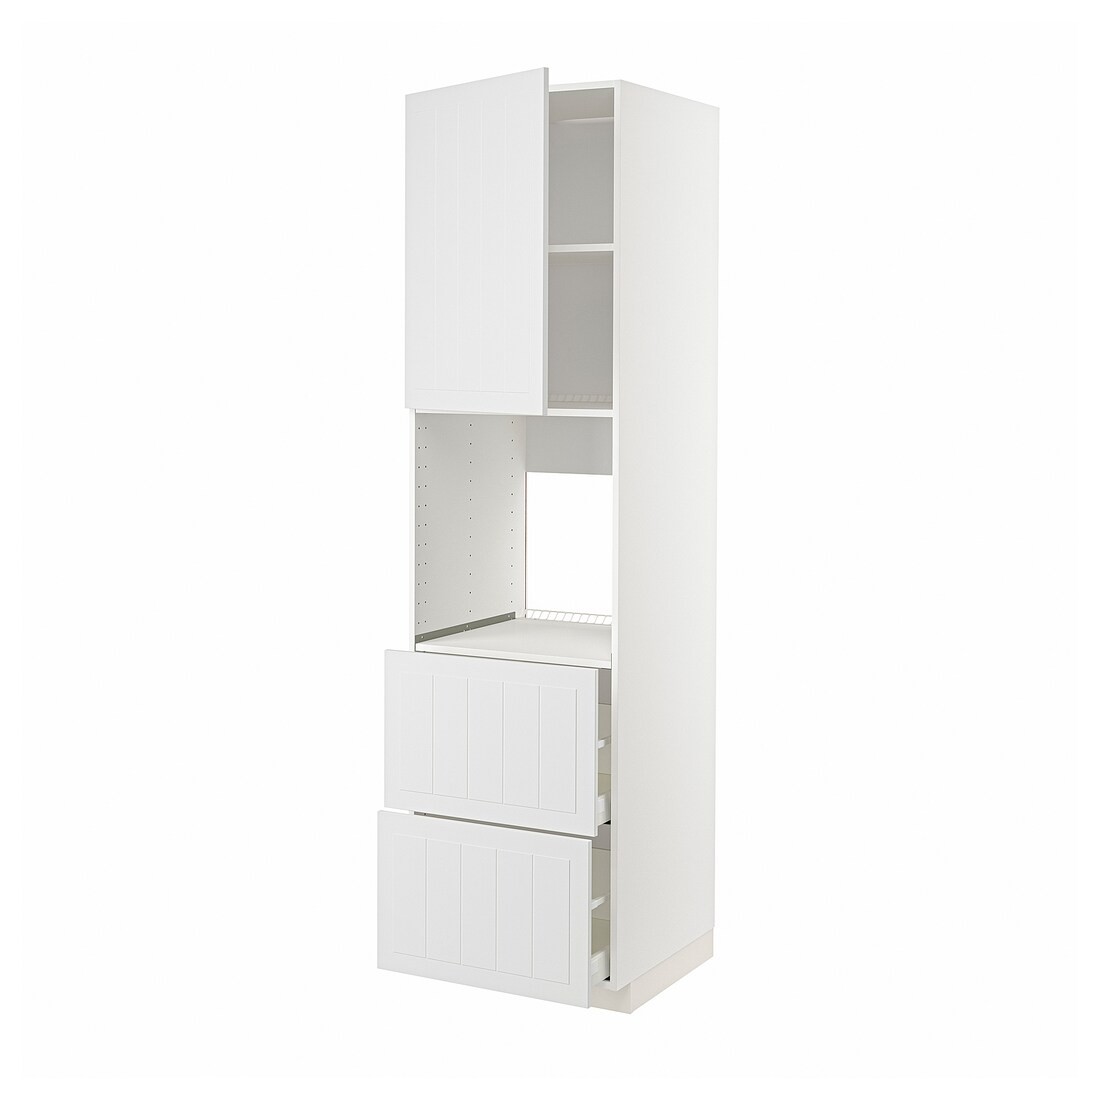 METOD МЕТОД / MAXIMERA МАКСИМЕРА Высокий шкаф для духовки с дверцей / ящиками, белый / Stensund белый, 60x60x220 см